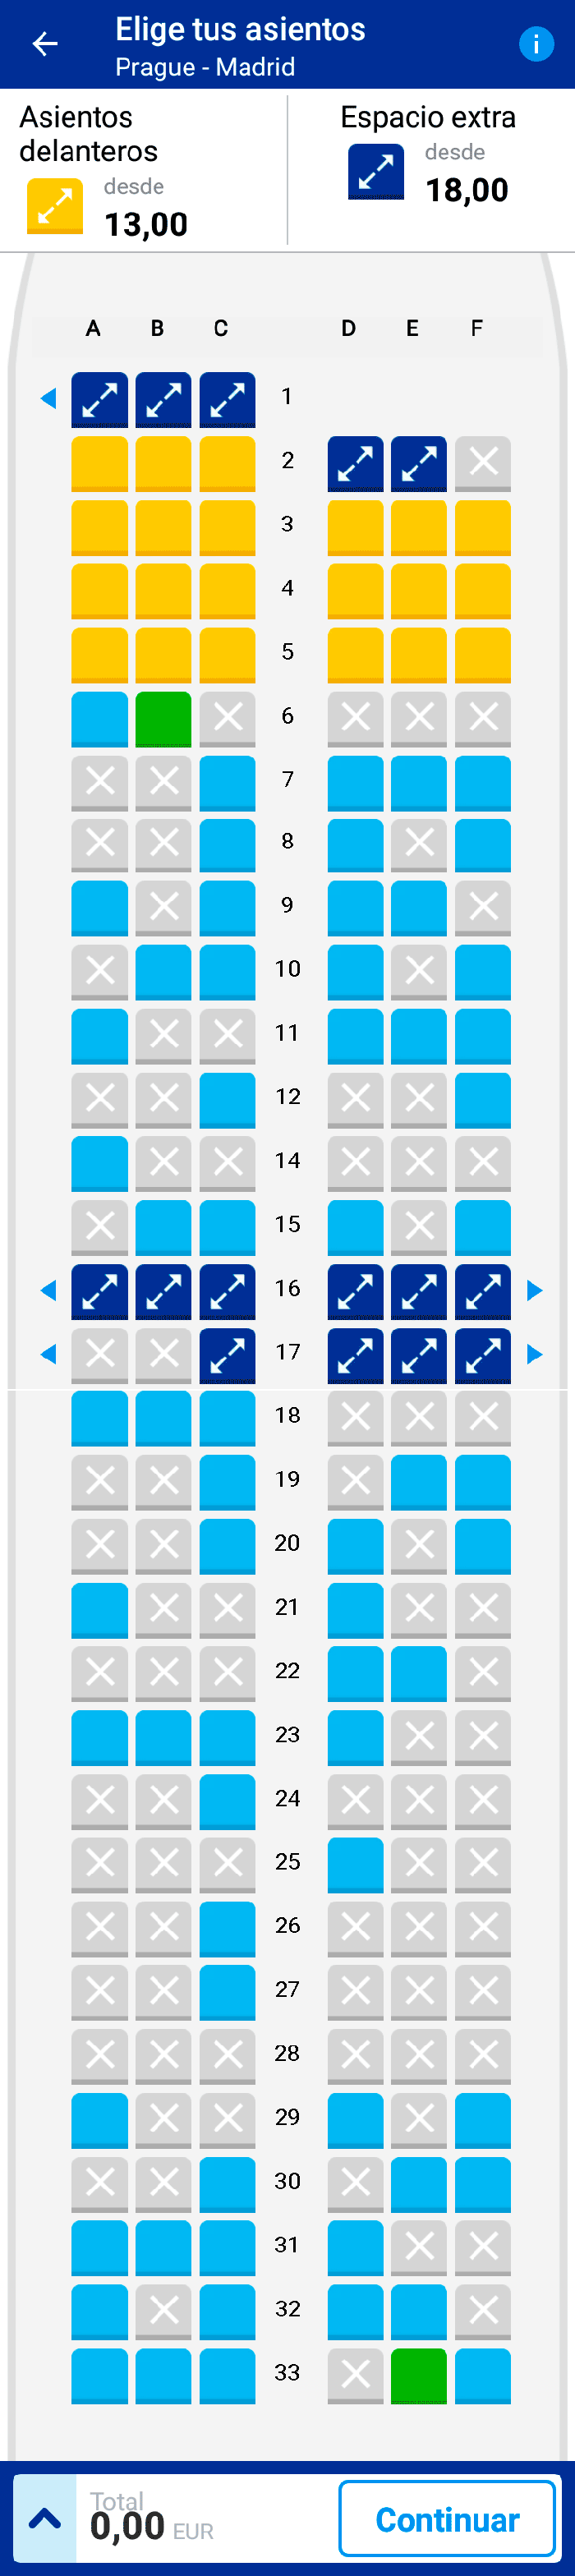 Ryanair asientos aleatorios